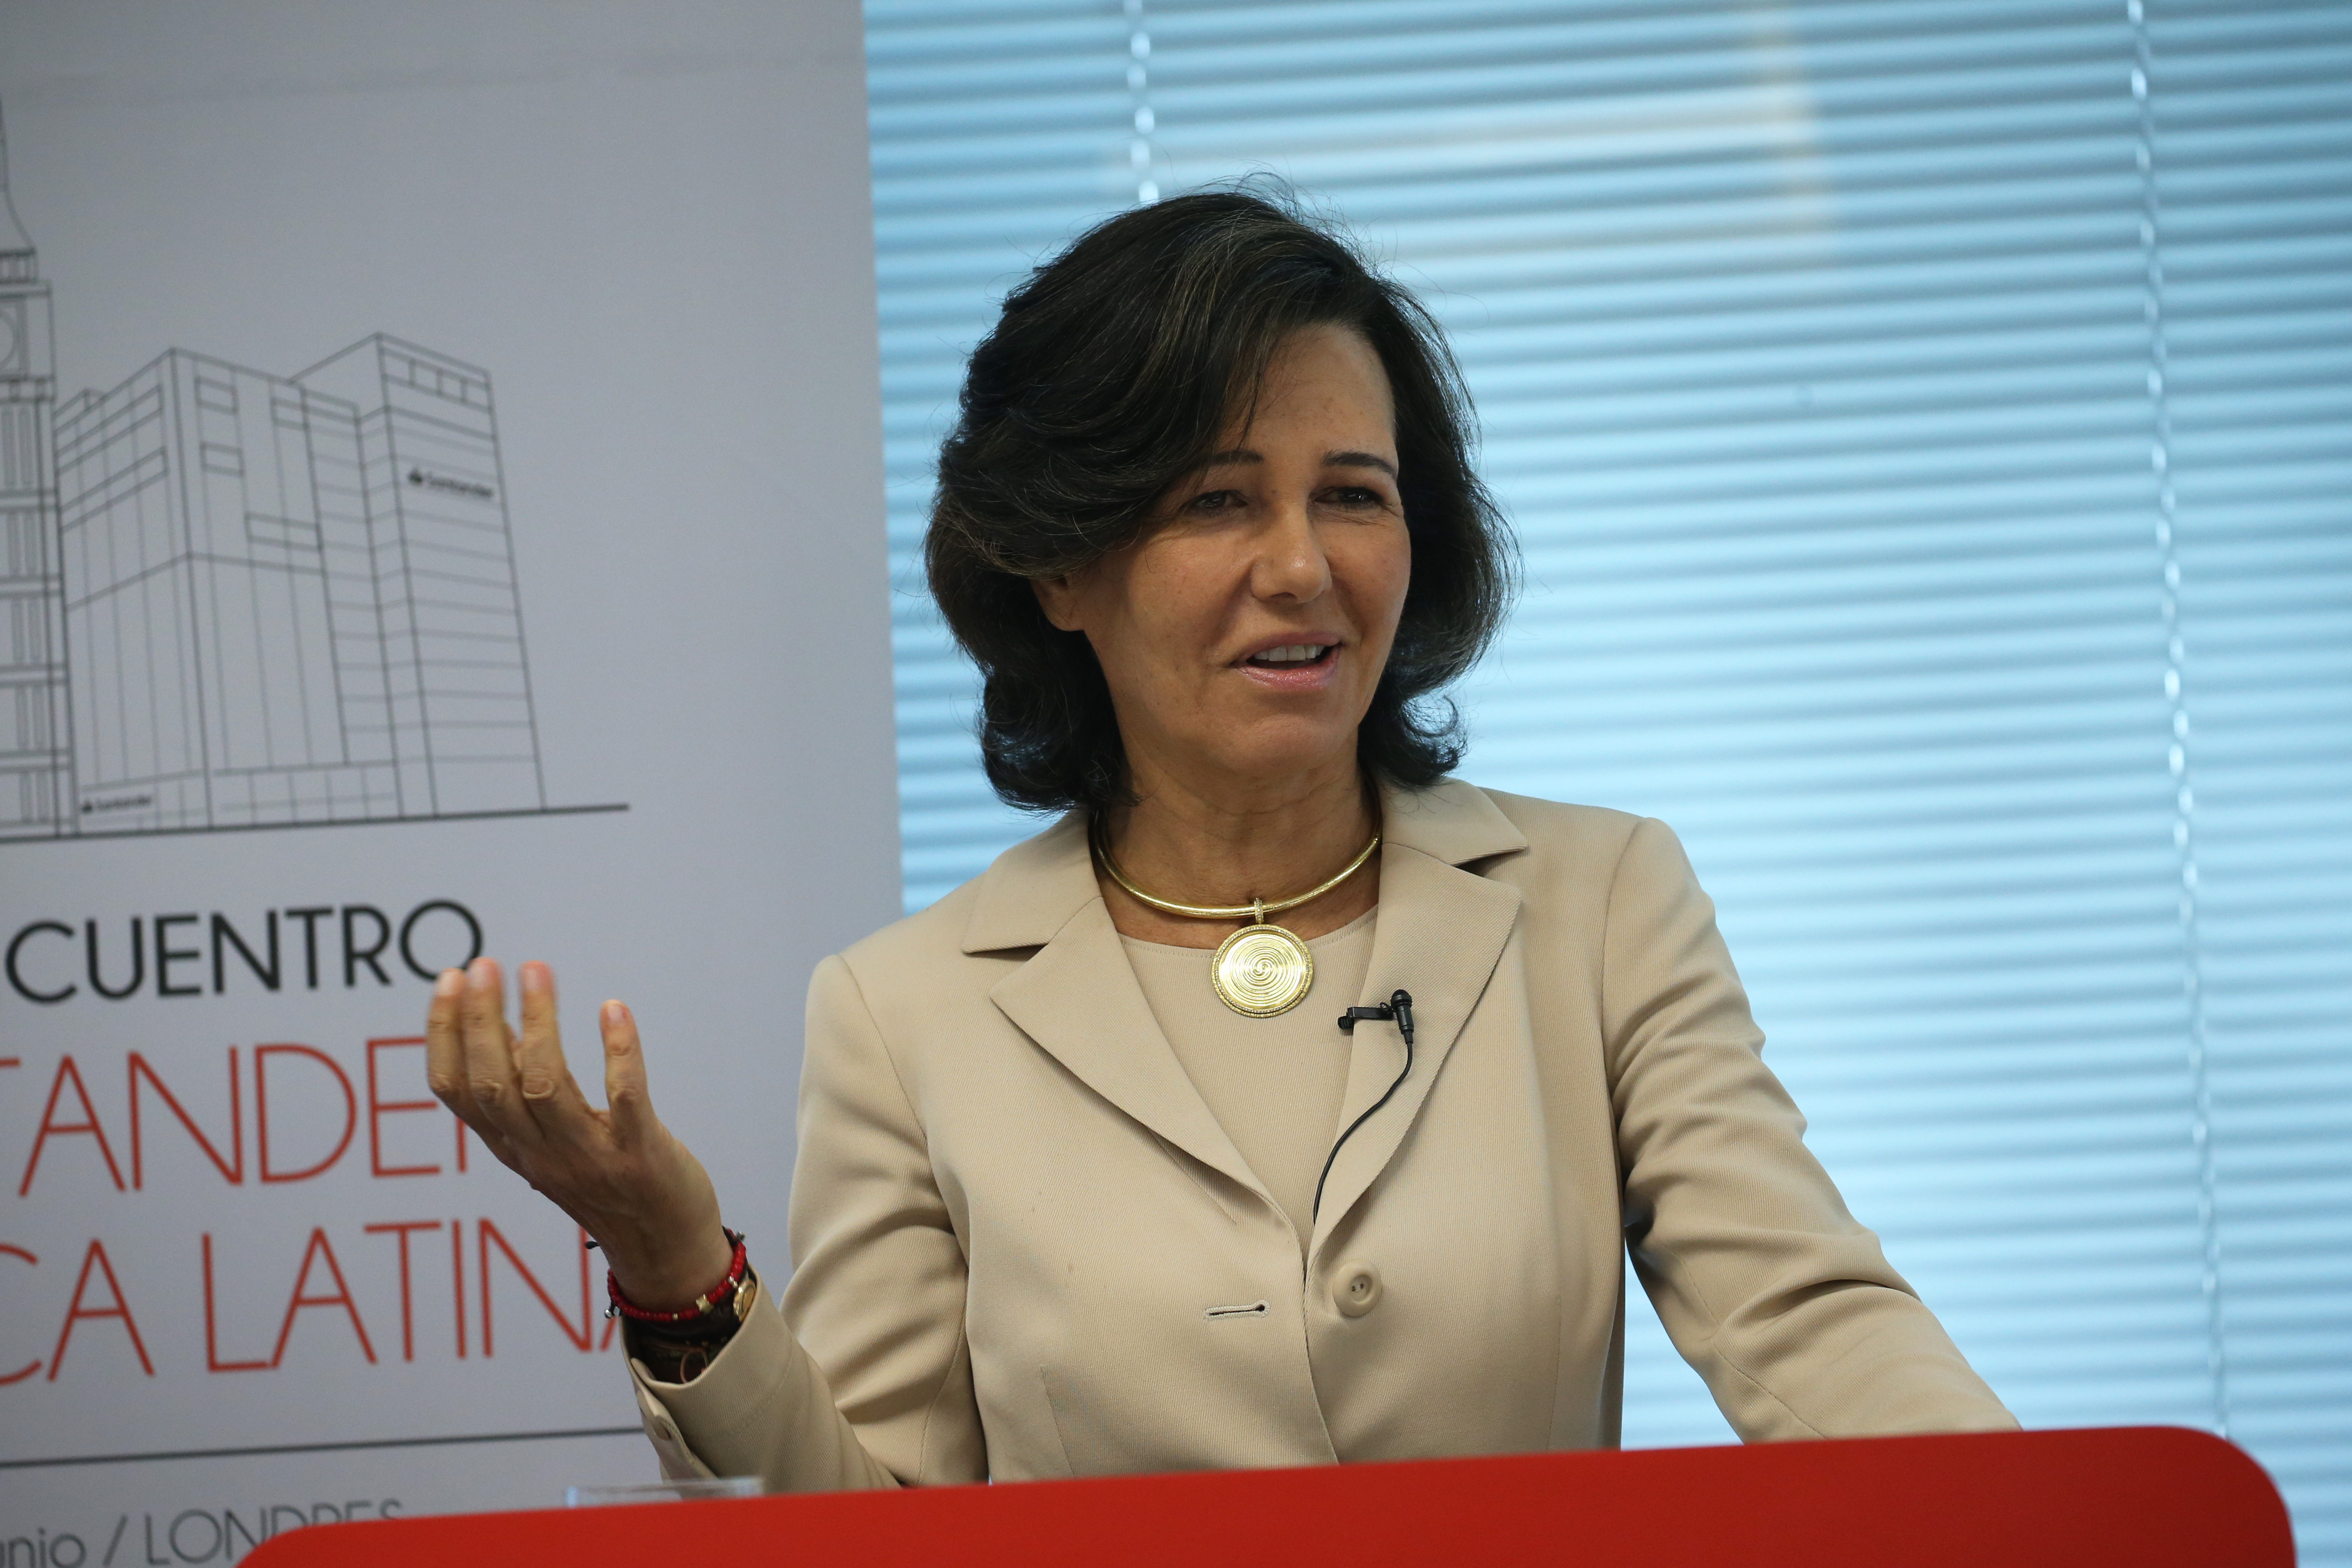 Ana Botín (Banco Santander) respalda los avances económicos de México y Argentina